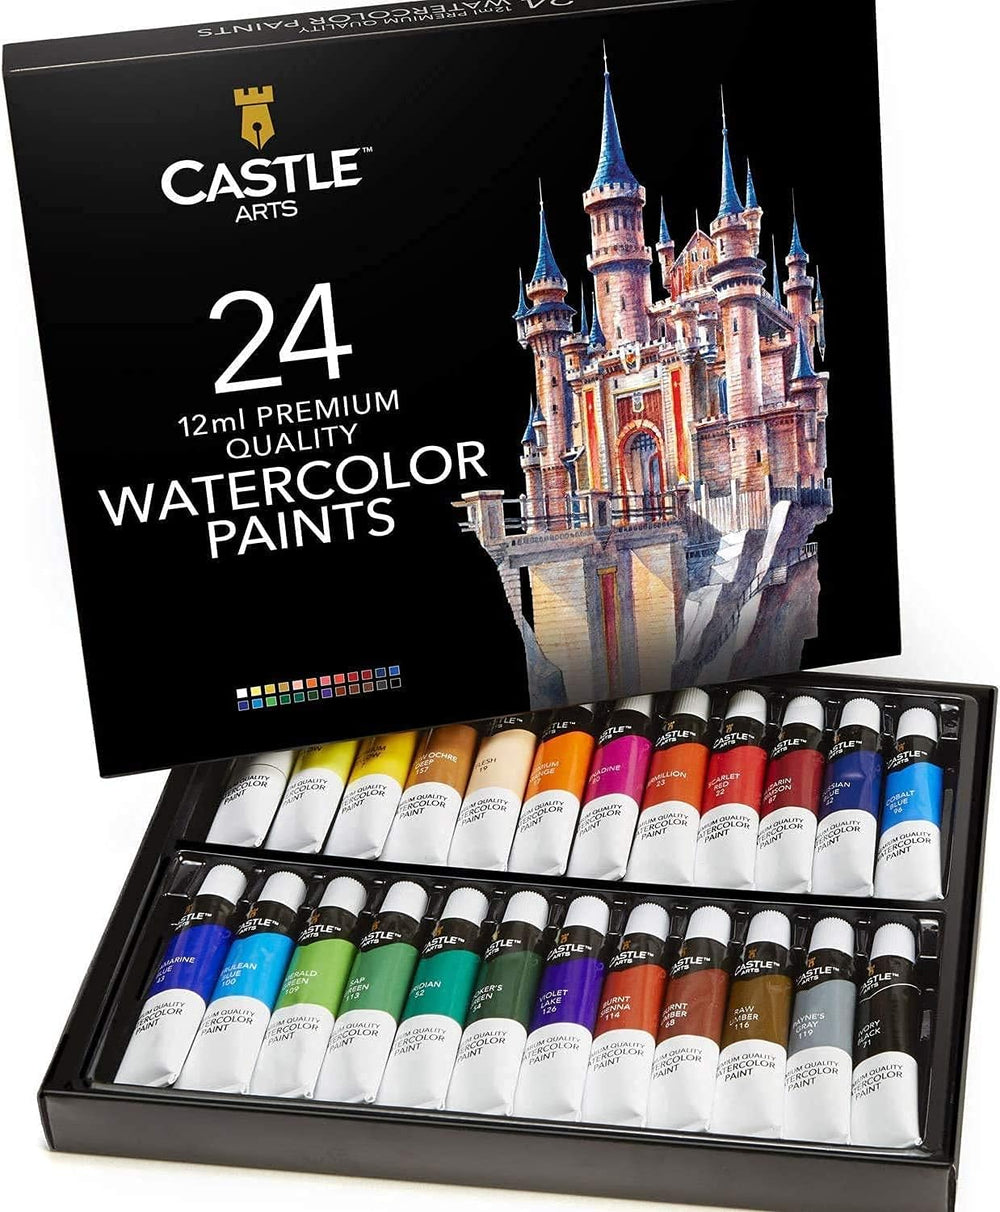 Castle Arts  48 Piece Seascape & Botanical Colored Pencils Palette Bundle  – Castle Arts USA